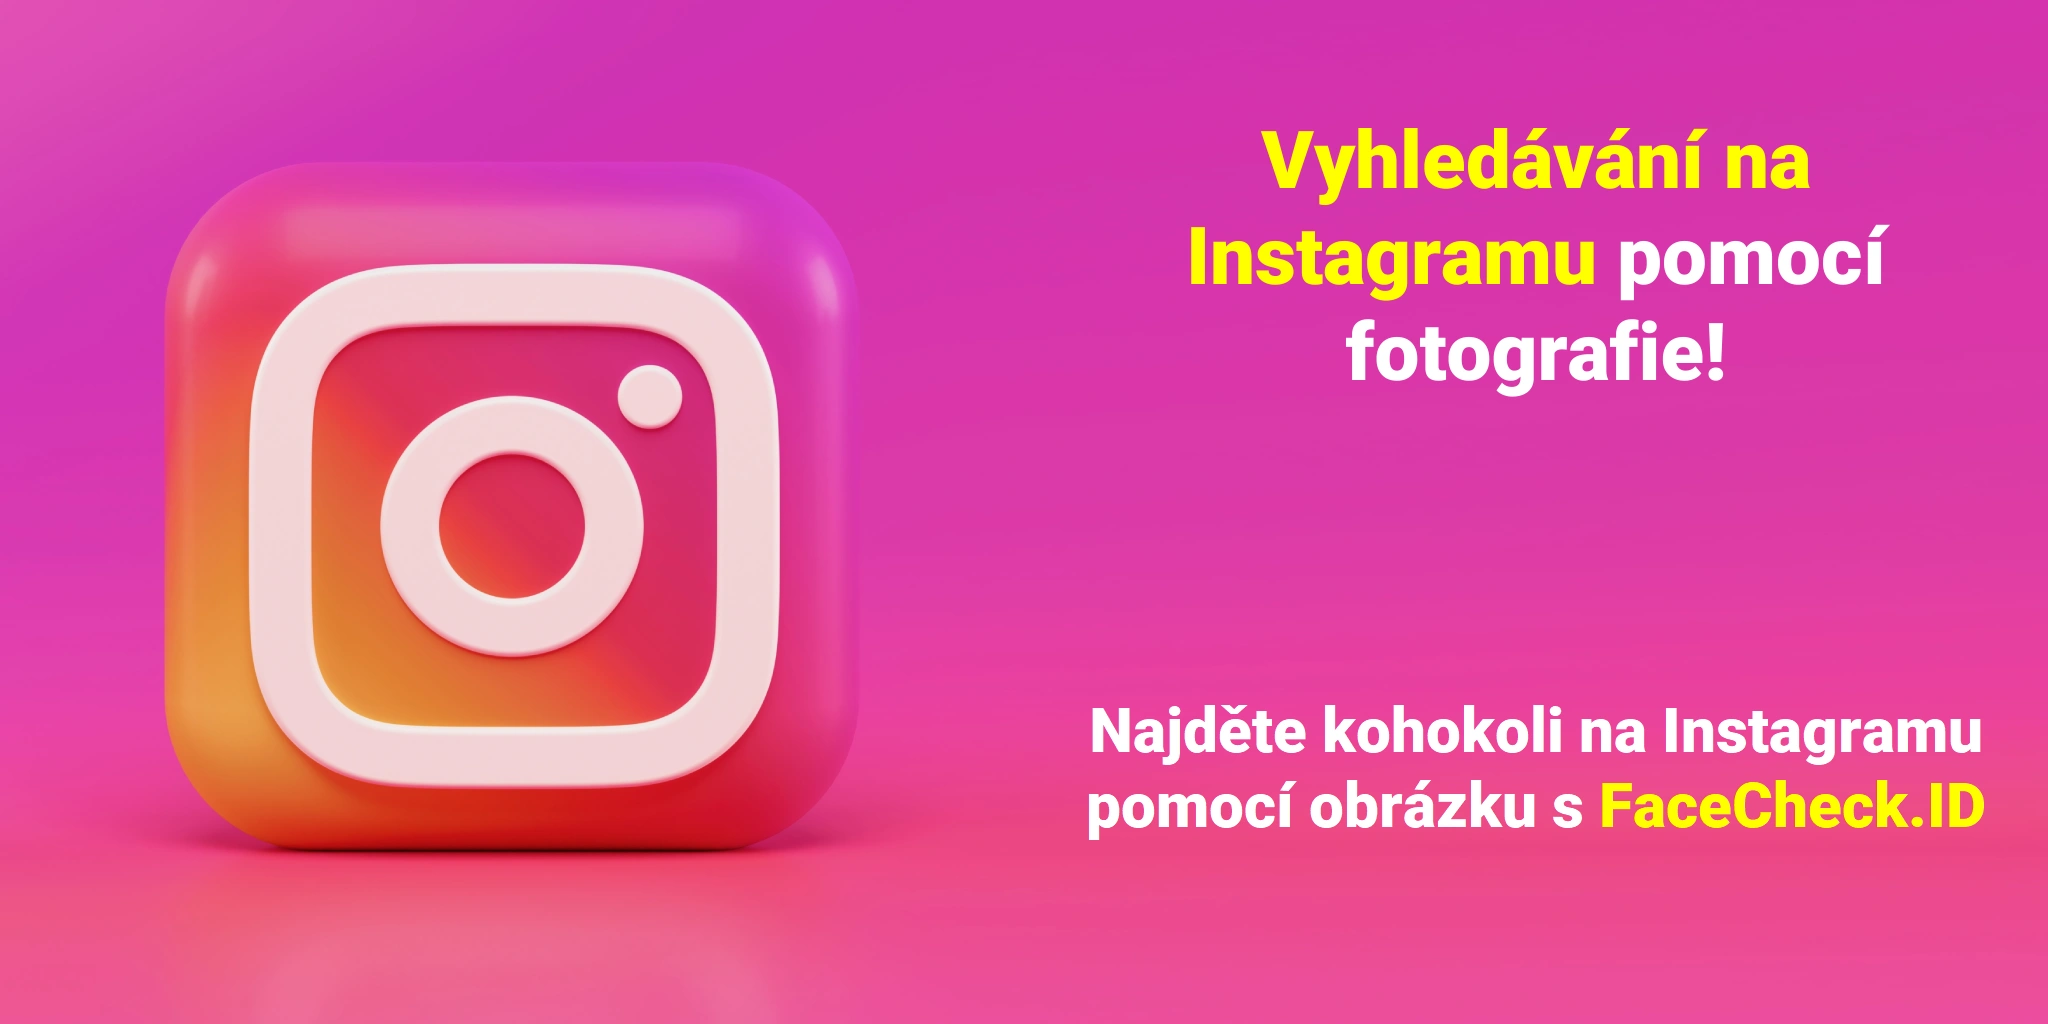 Vyhledávání na Instagramu pomocí obrázku a nalezení jakéhokoli profilu na Instagramu